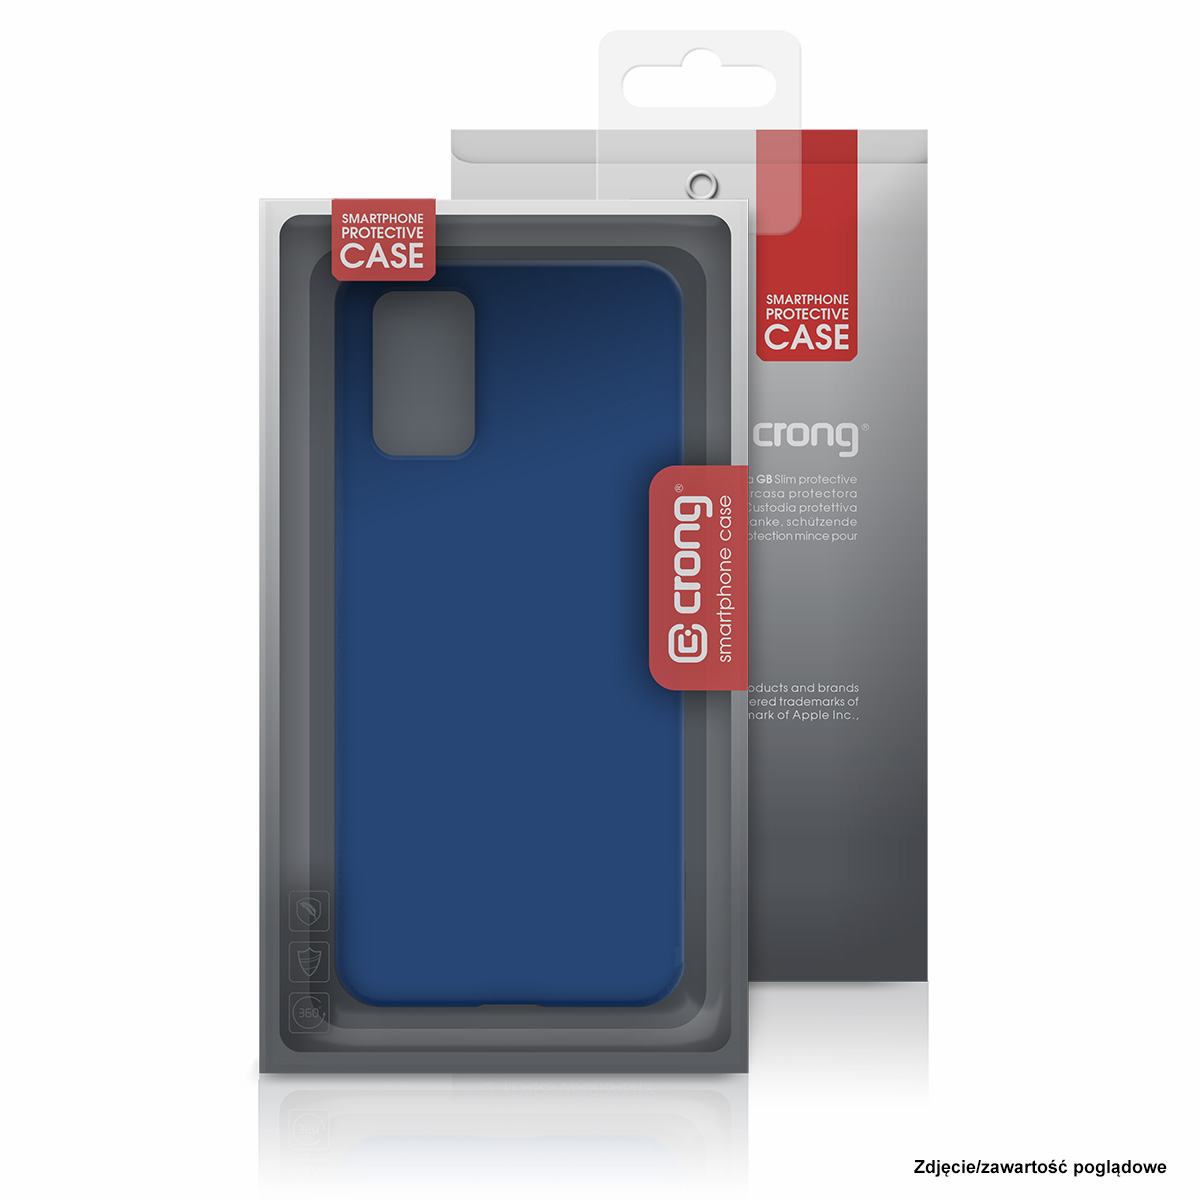 Crong Defender Case - Etui Samsung Galaxy S20+ (czarny)